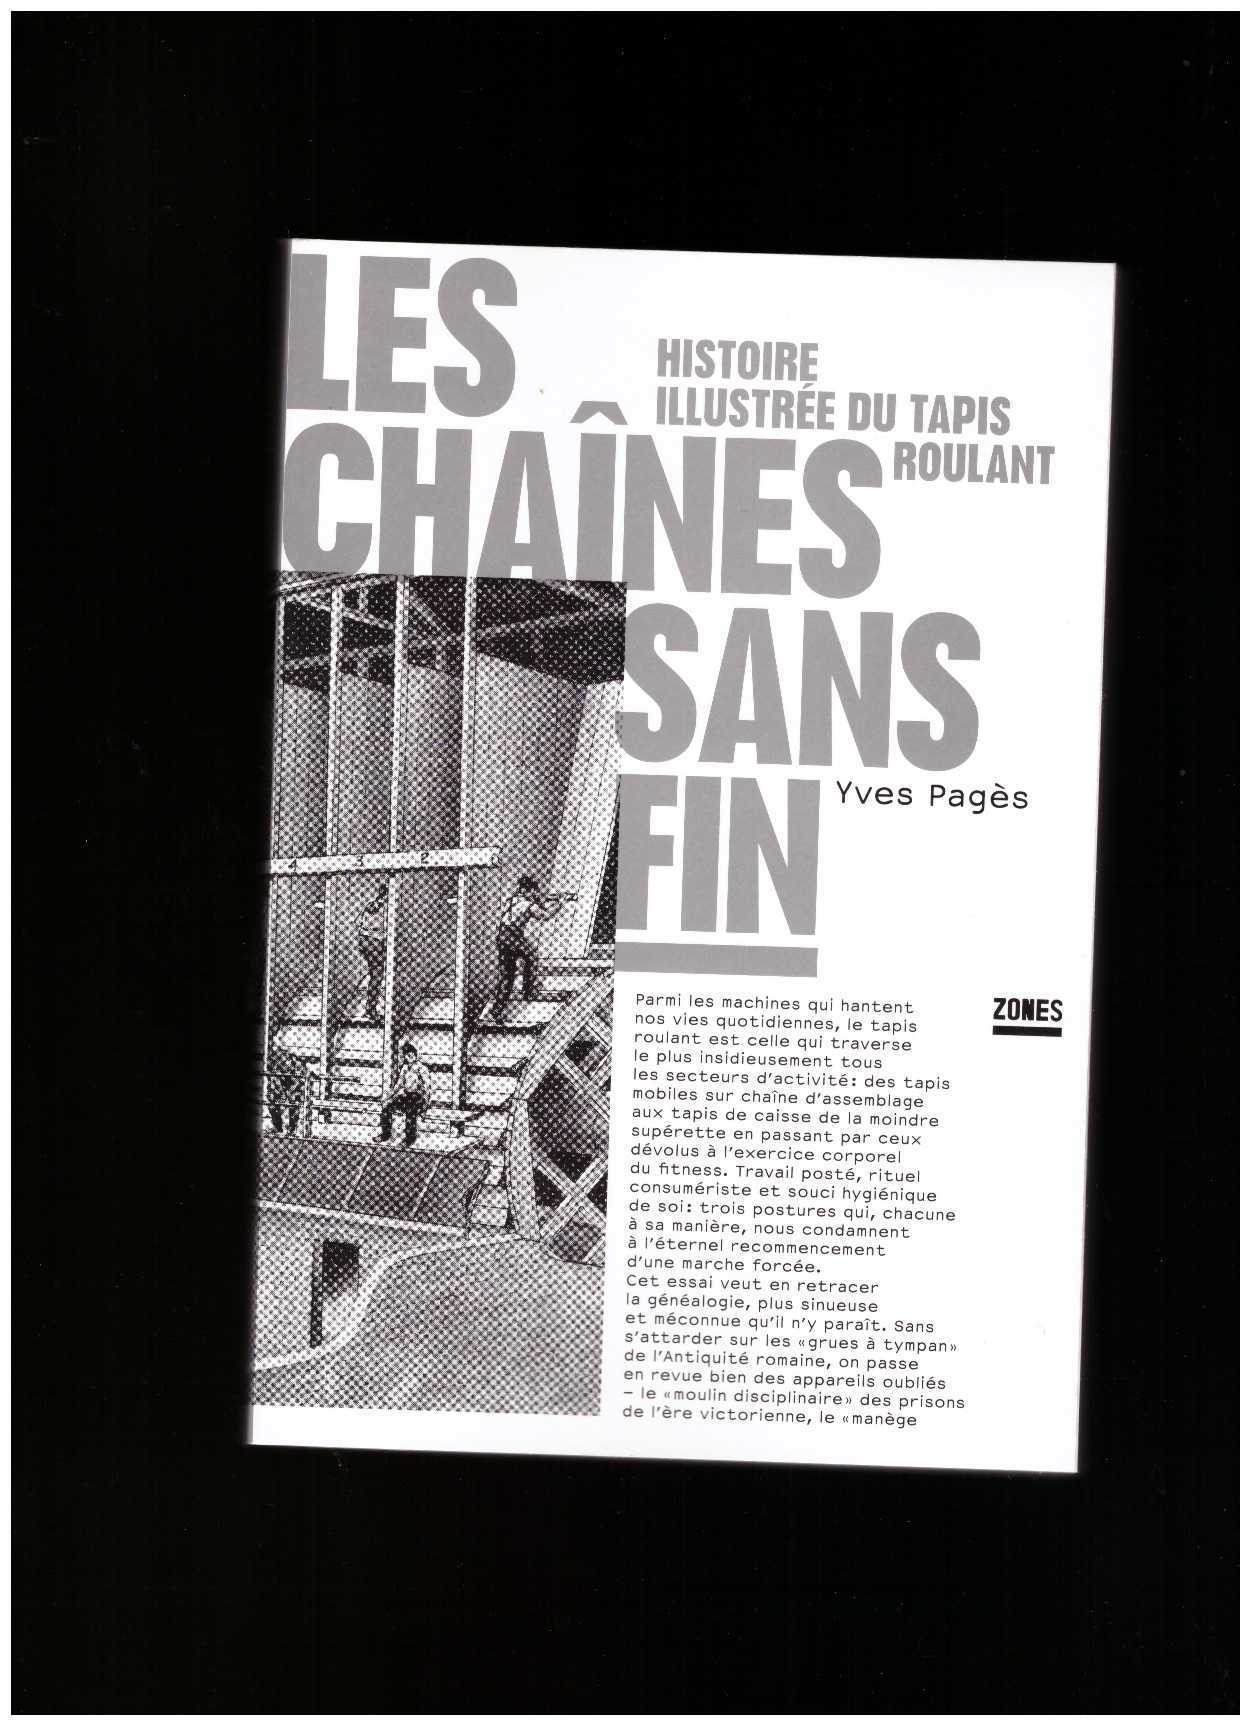 PAGÈS, Yves - Les chaînes sans fin. Histoire illustrée du tapis roulant